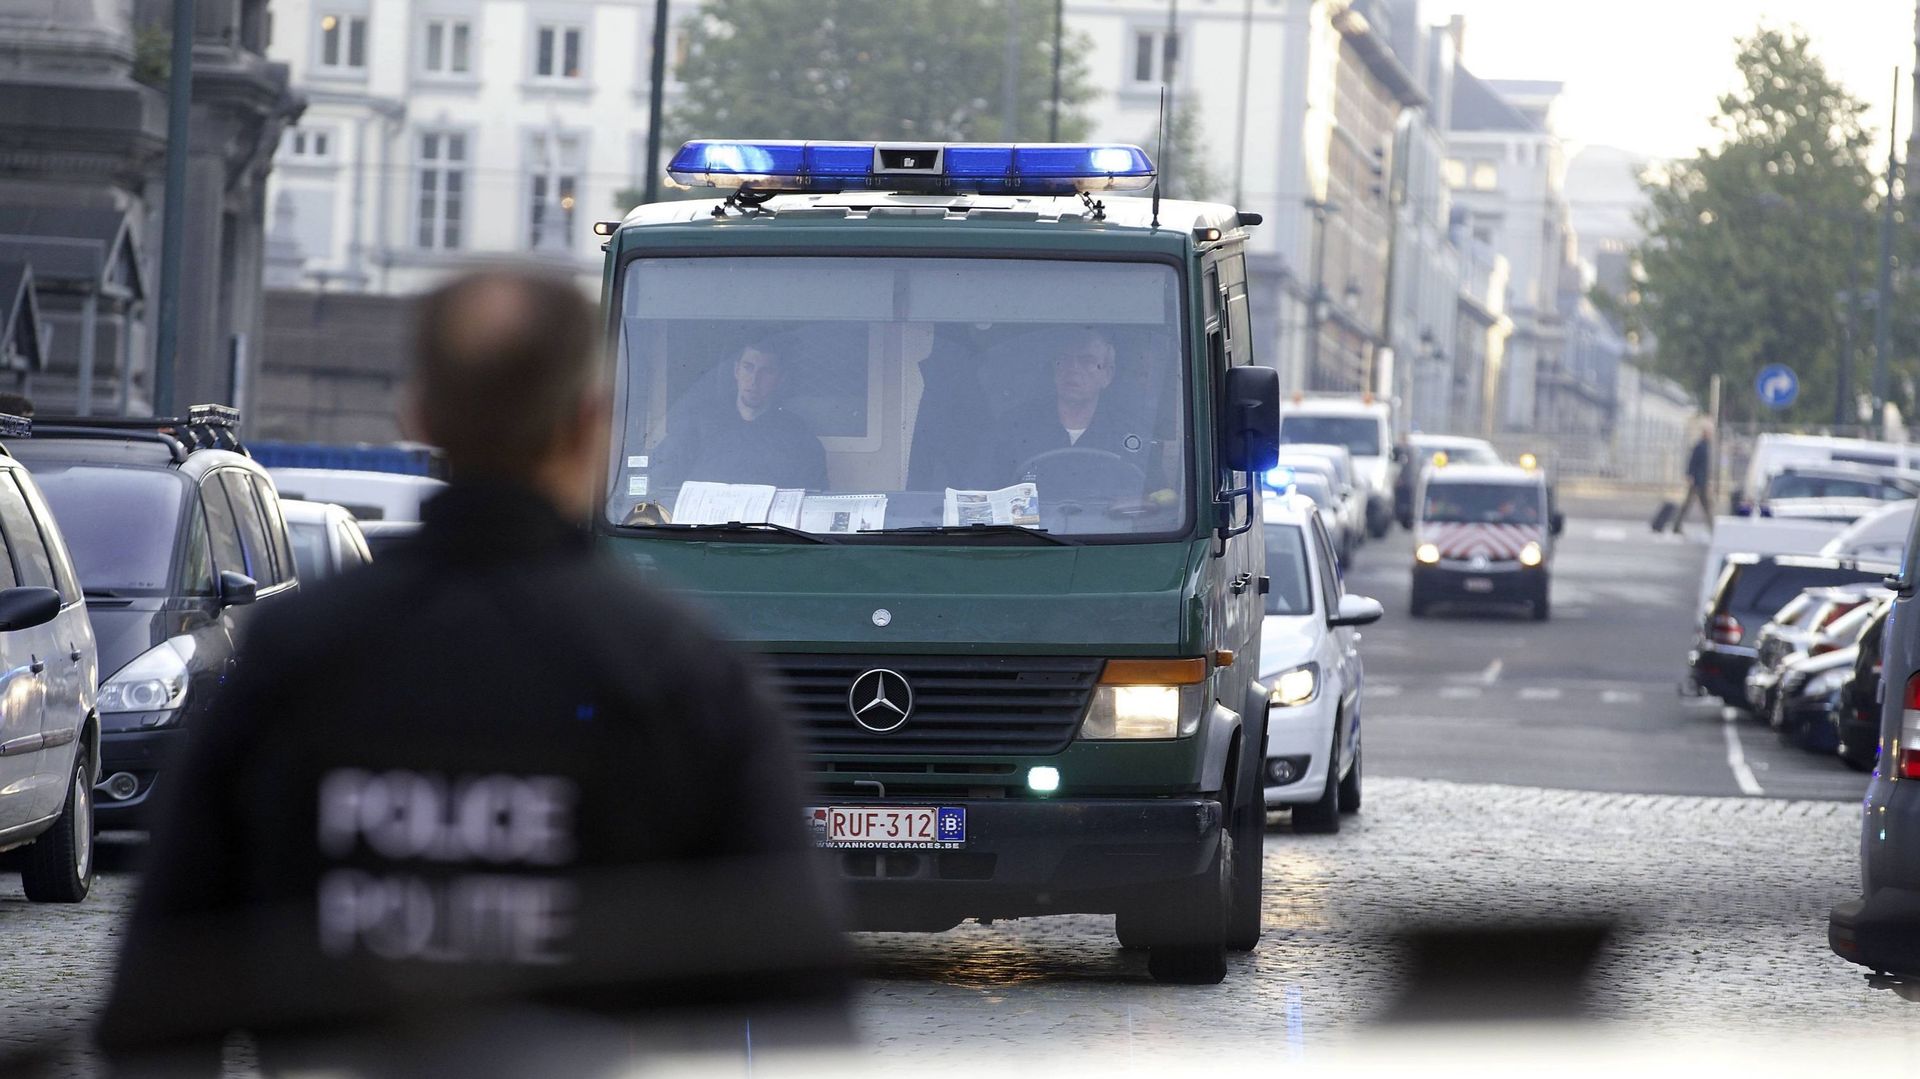 La justice française décide de remettre à la Belgique le complice présumé de Mehdi Nemmouche